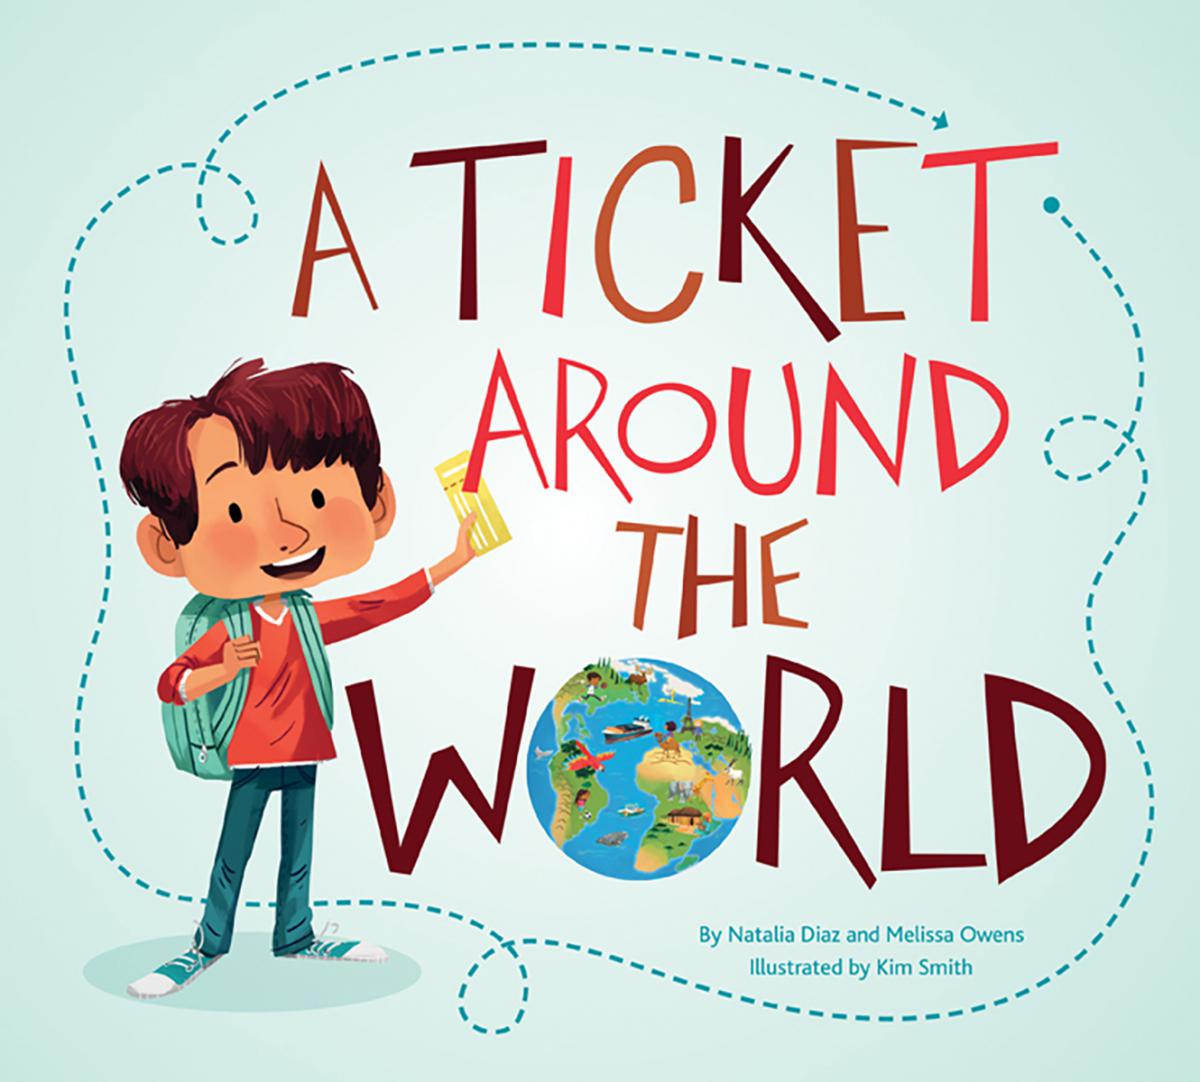  Ticket Around the World 